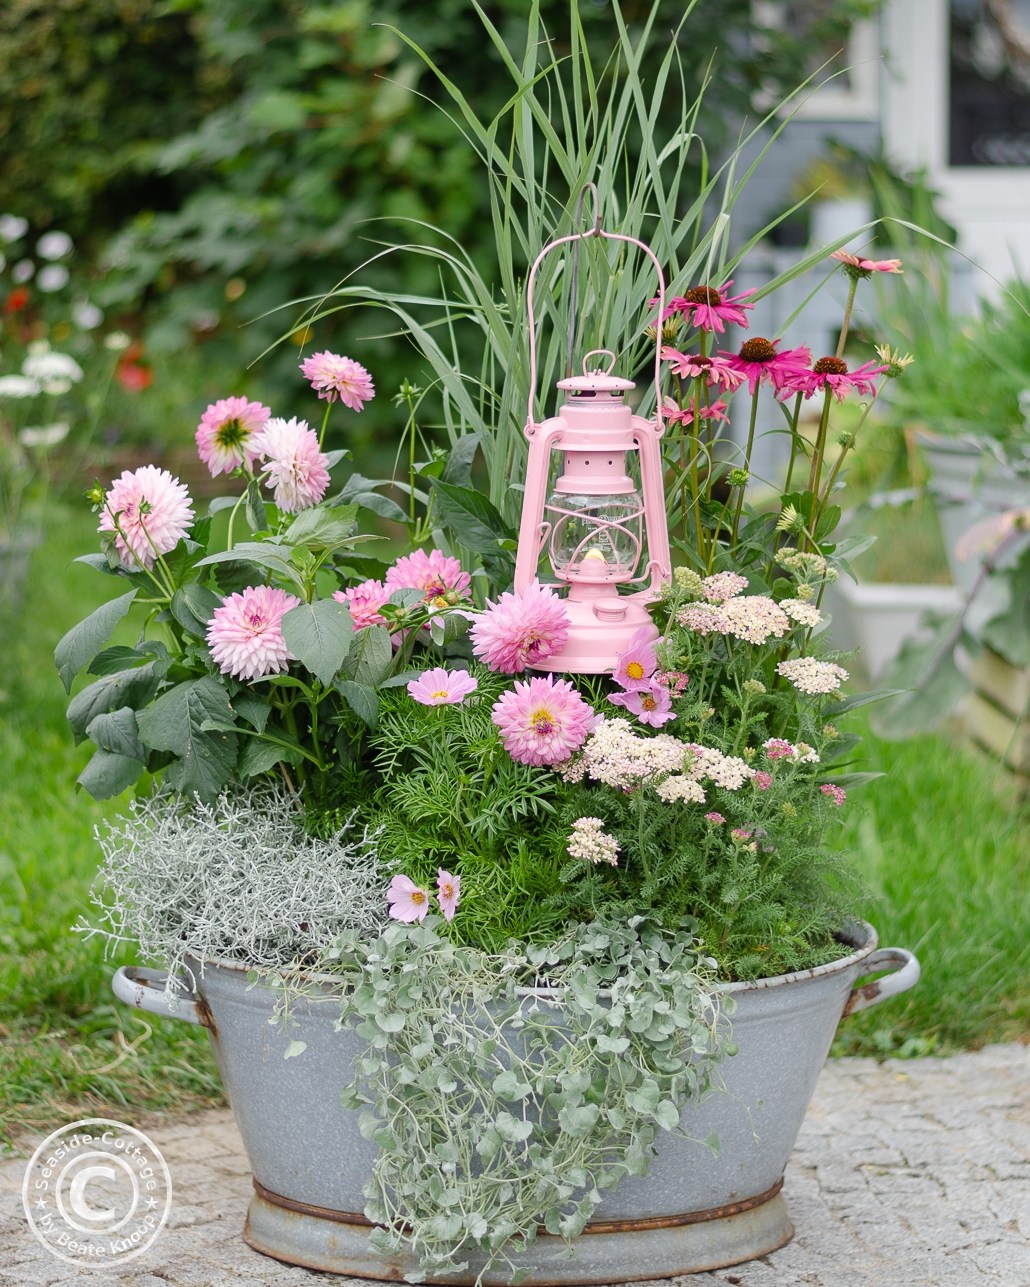 Bepflanzte Zinkwanne mit rosa Sommerblumen und mit einer rosa Laterne Marke Feuerhand Baby Special dekoriert